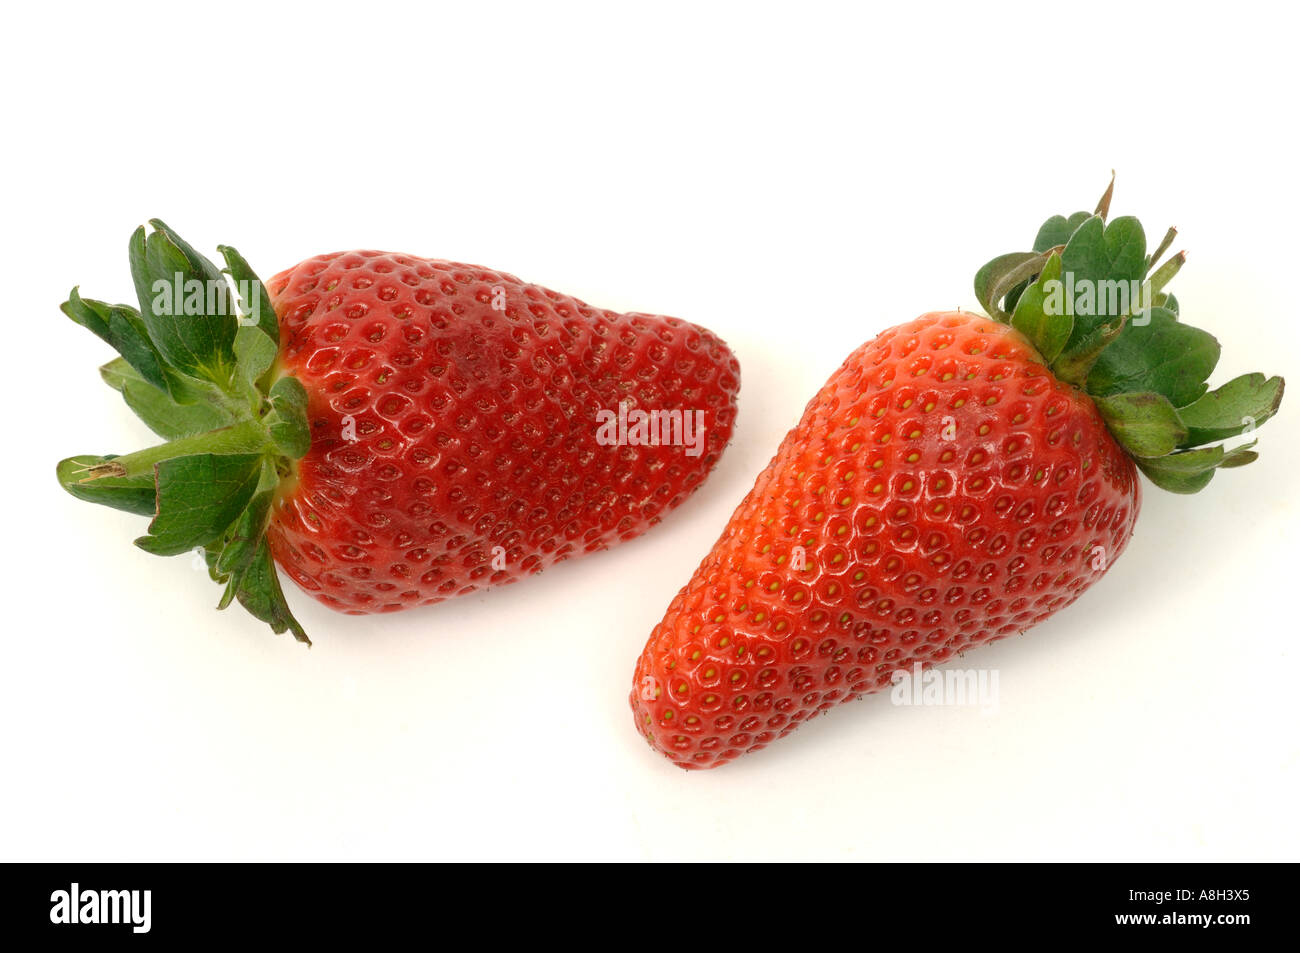 Spanische Erdbeeren Früchte Supermarkt gekauft und in einem normalen Geschäft Zustand Stockfoto